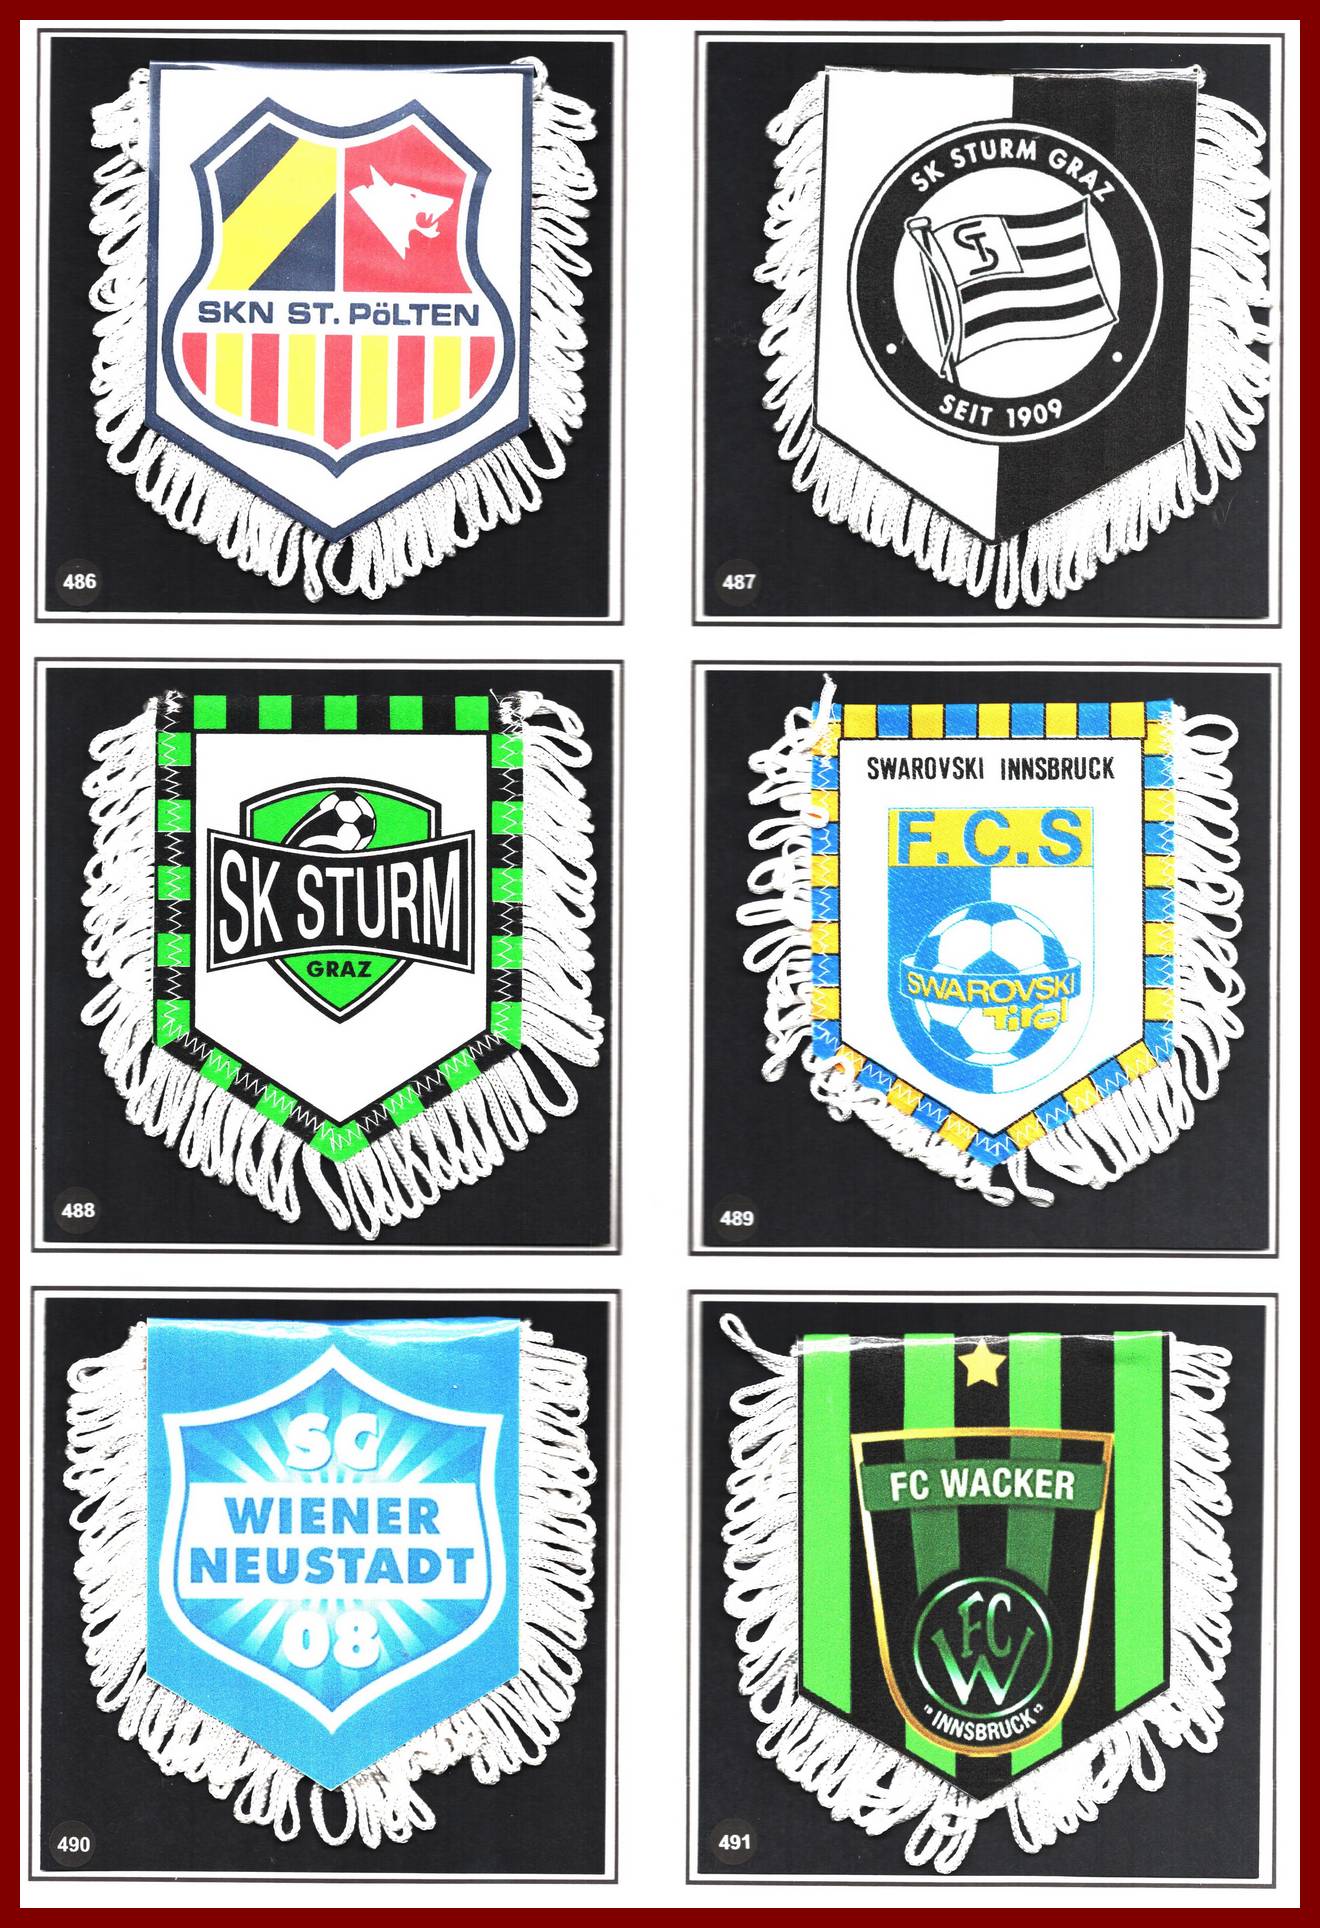 Photo 561 AUTRICHE (Page 02): SKM Sankt Polten - SK Sturm Graz - FC Swarowski unnsbruck  - SC Wiener Neustadt - FC Wacker